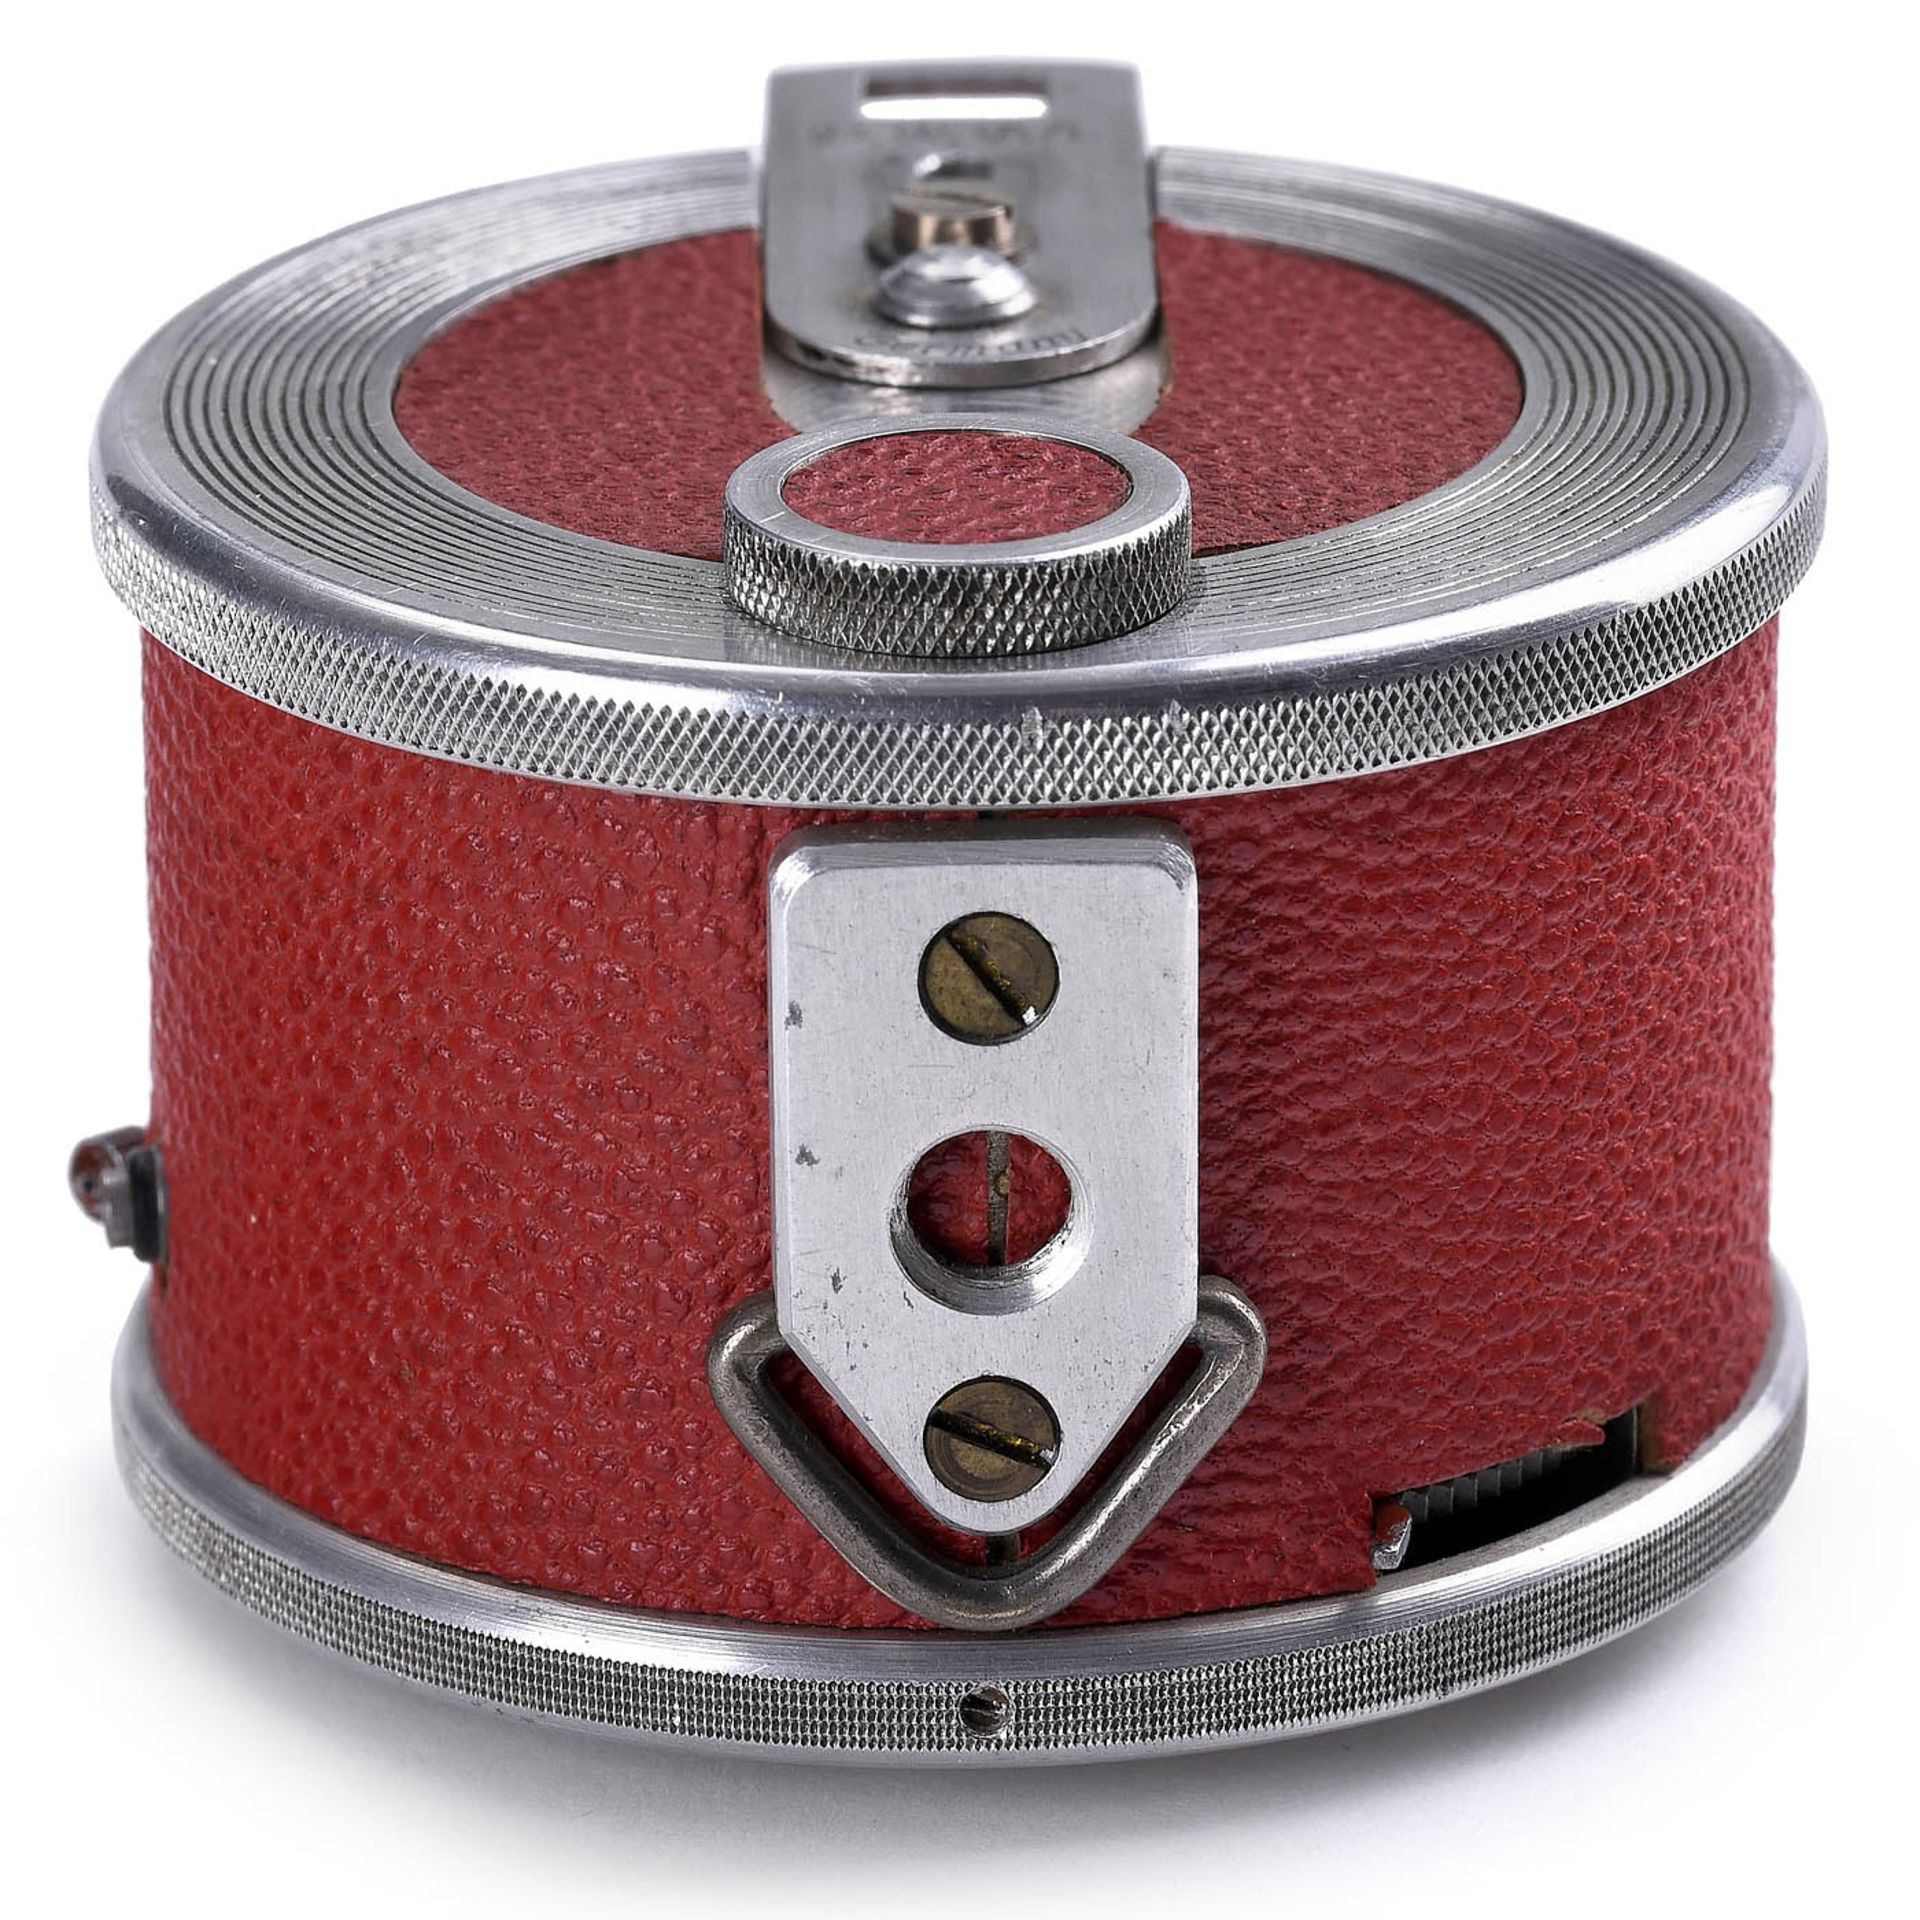 Fotal (Red) Miniature Camera, c. 1955 - Bild 4 aus 5